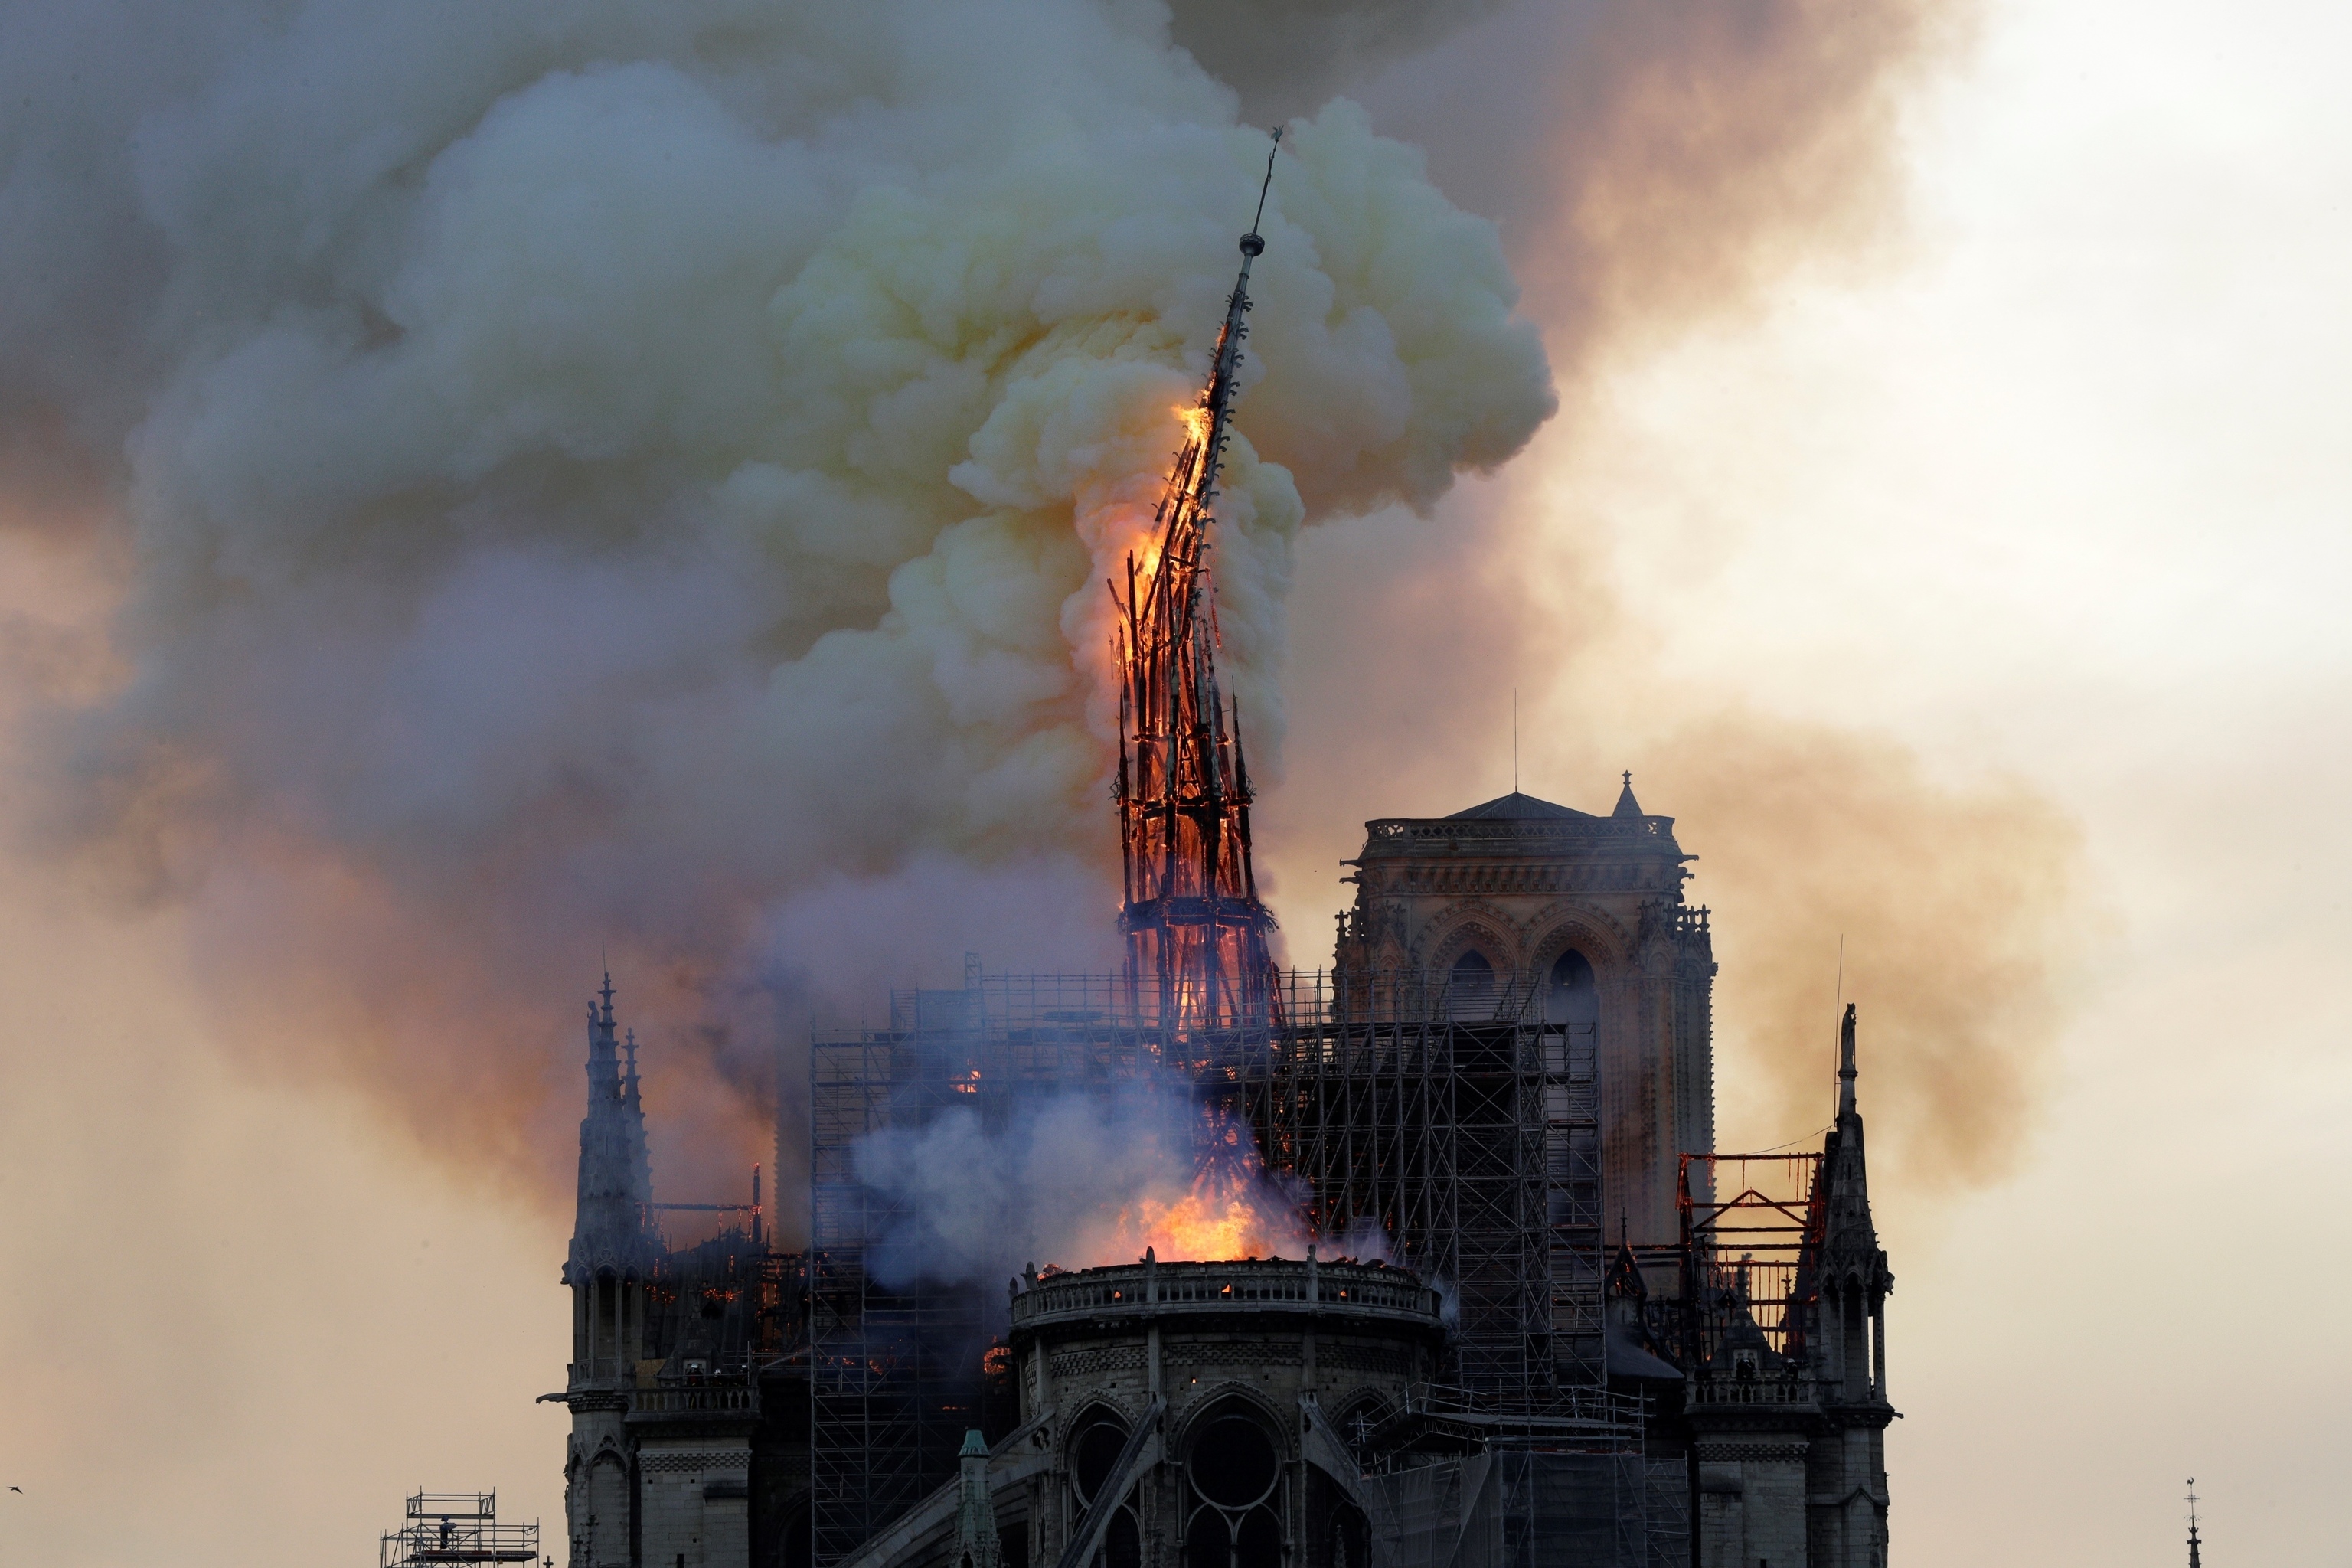 En esta foto de archivo tomada el 15 de abril de 2019, el campanario y la aguja de la emblemtica catedral de Notre-Dame se derrumba mientras la catedral est envuelta en llamas en el centro de Pars. - Un enorme incendio arras con el techo de la famosa Catedral de Notre-Dame en el centro de Pars el 15 de abril de 2019, enviando llamas y enormes nubes de humo gris que se expanden hacia el cielo. 

Traduccin realizada con la versin gratuita del traductor www.DeepL.com/Translator